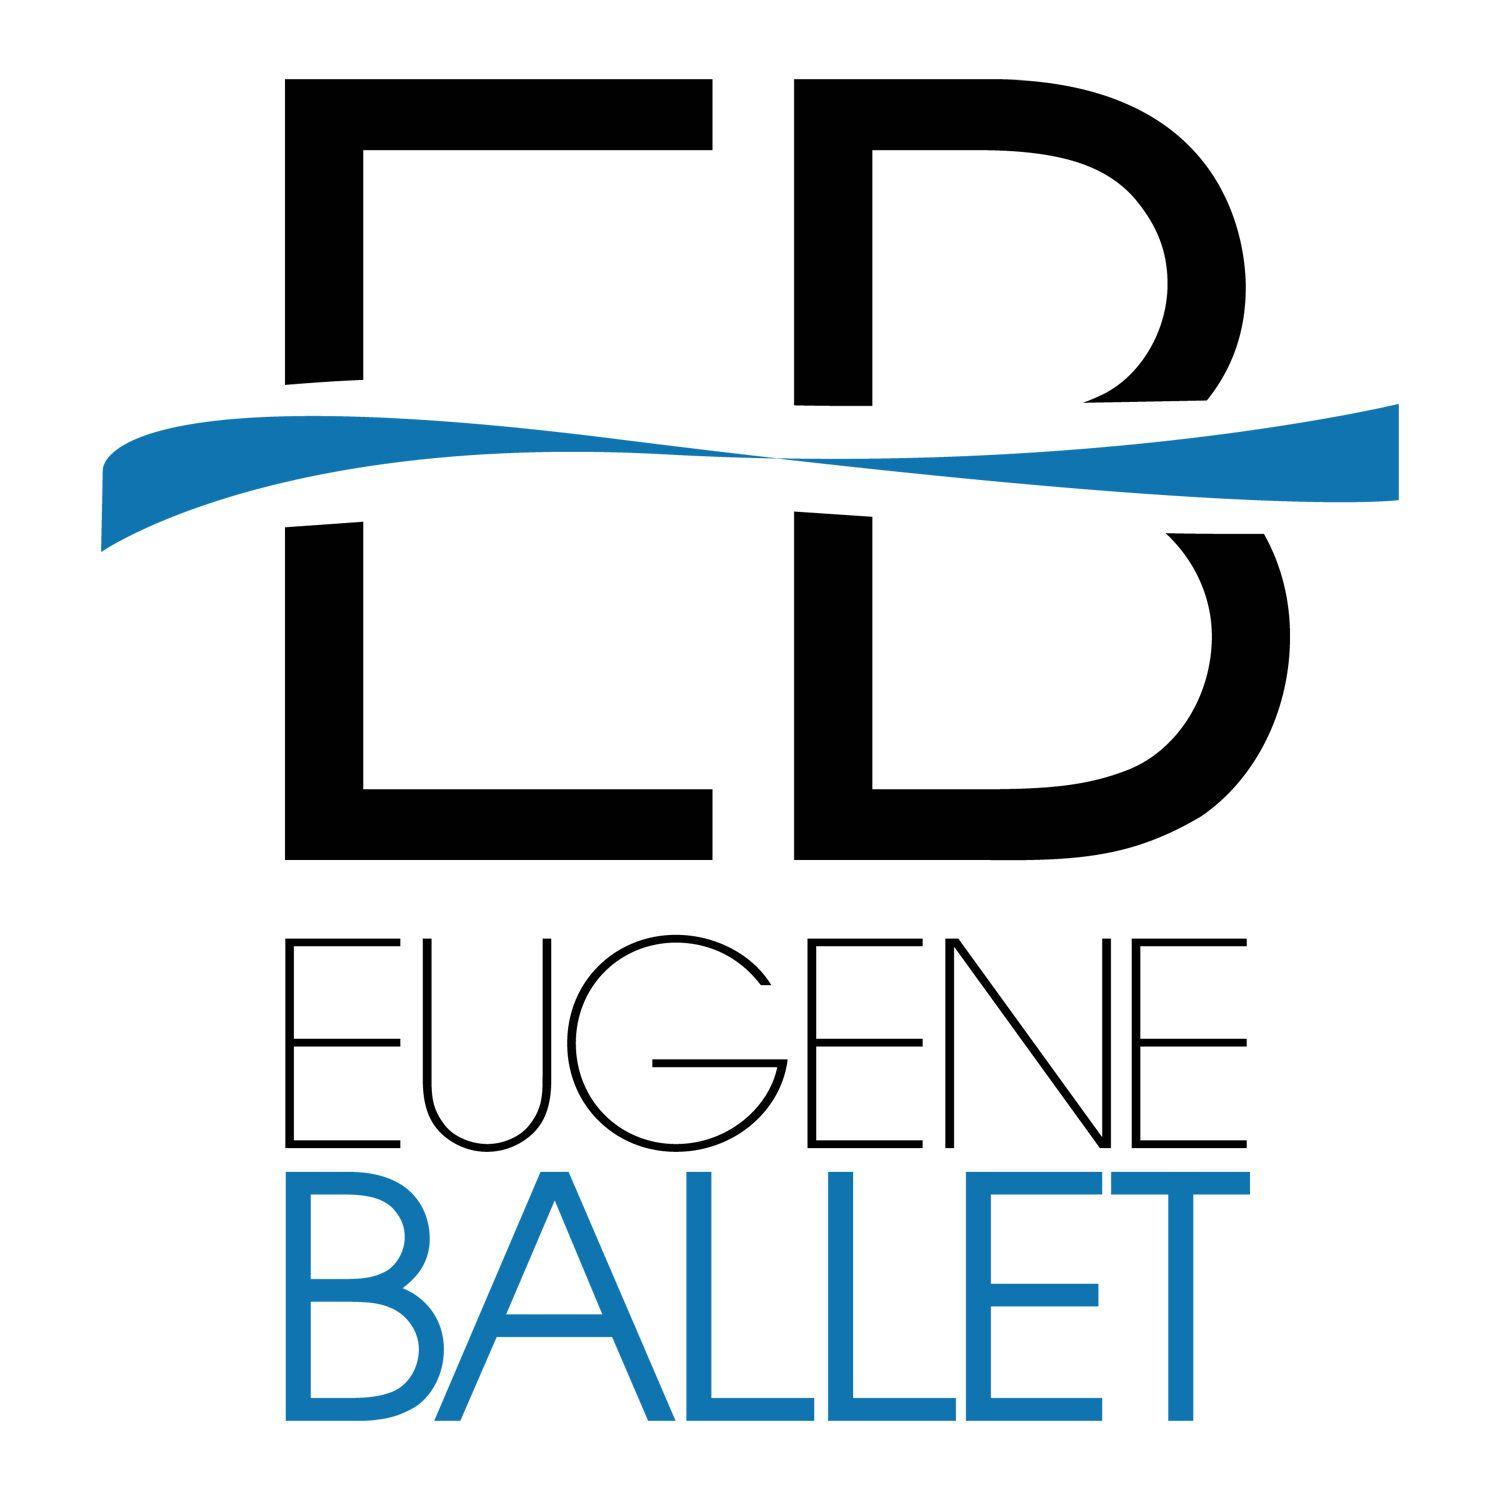 Eugene Logo - Eugene Ballet. Create, perform, educate & inspire through dance